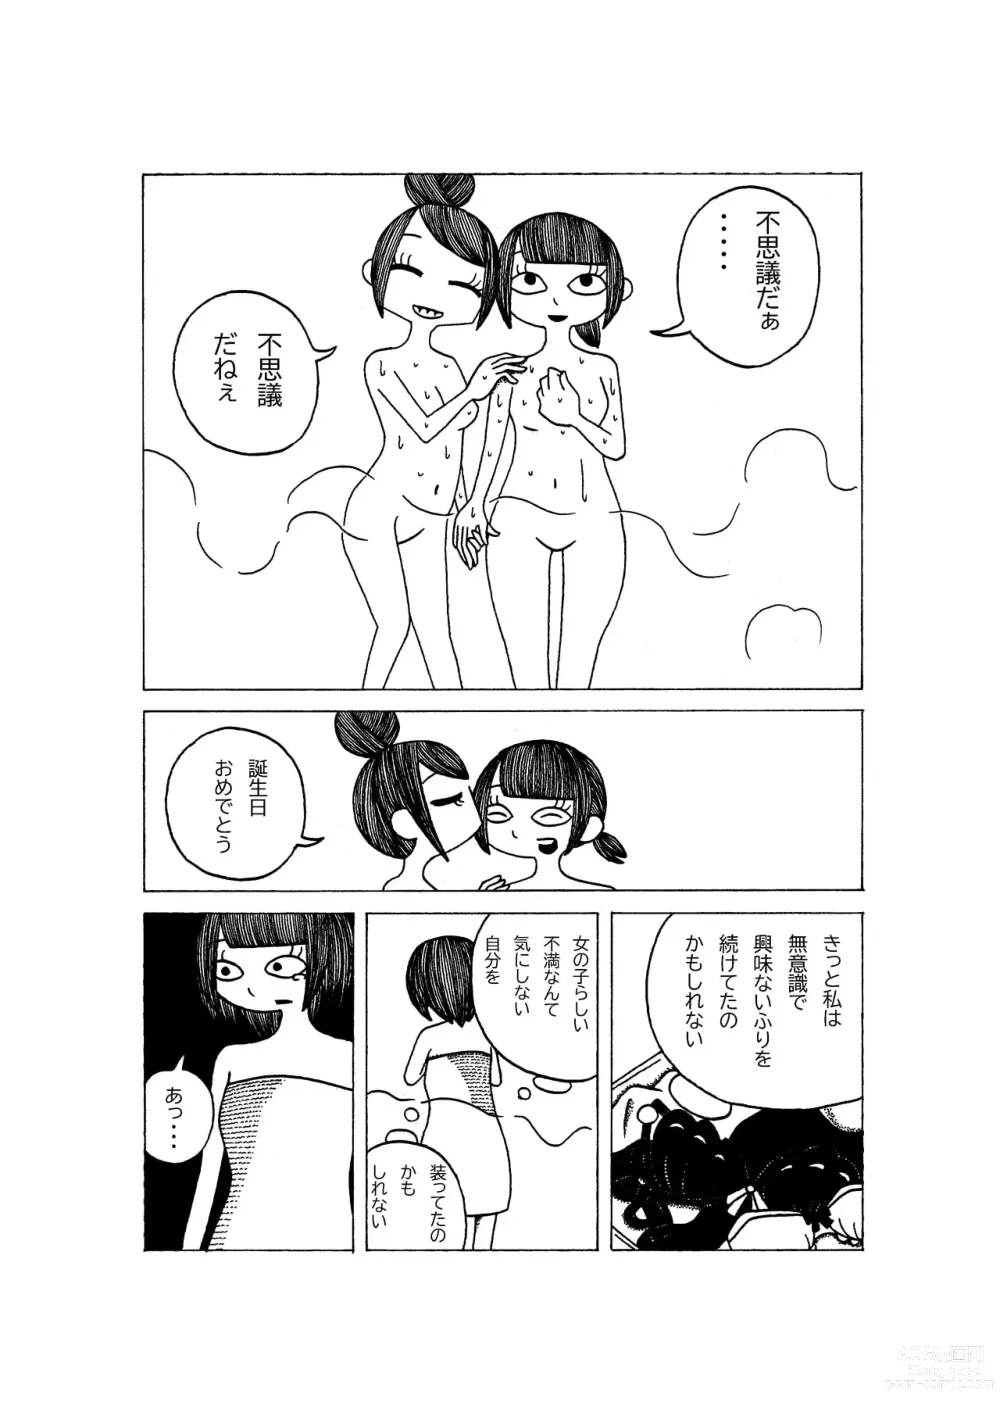 Page 10 of doujinshi Tokubetsuna Tanjoubi no Dekigoto.